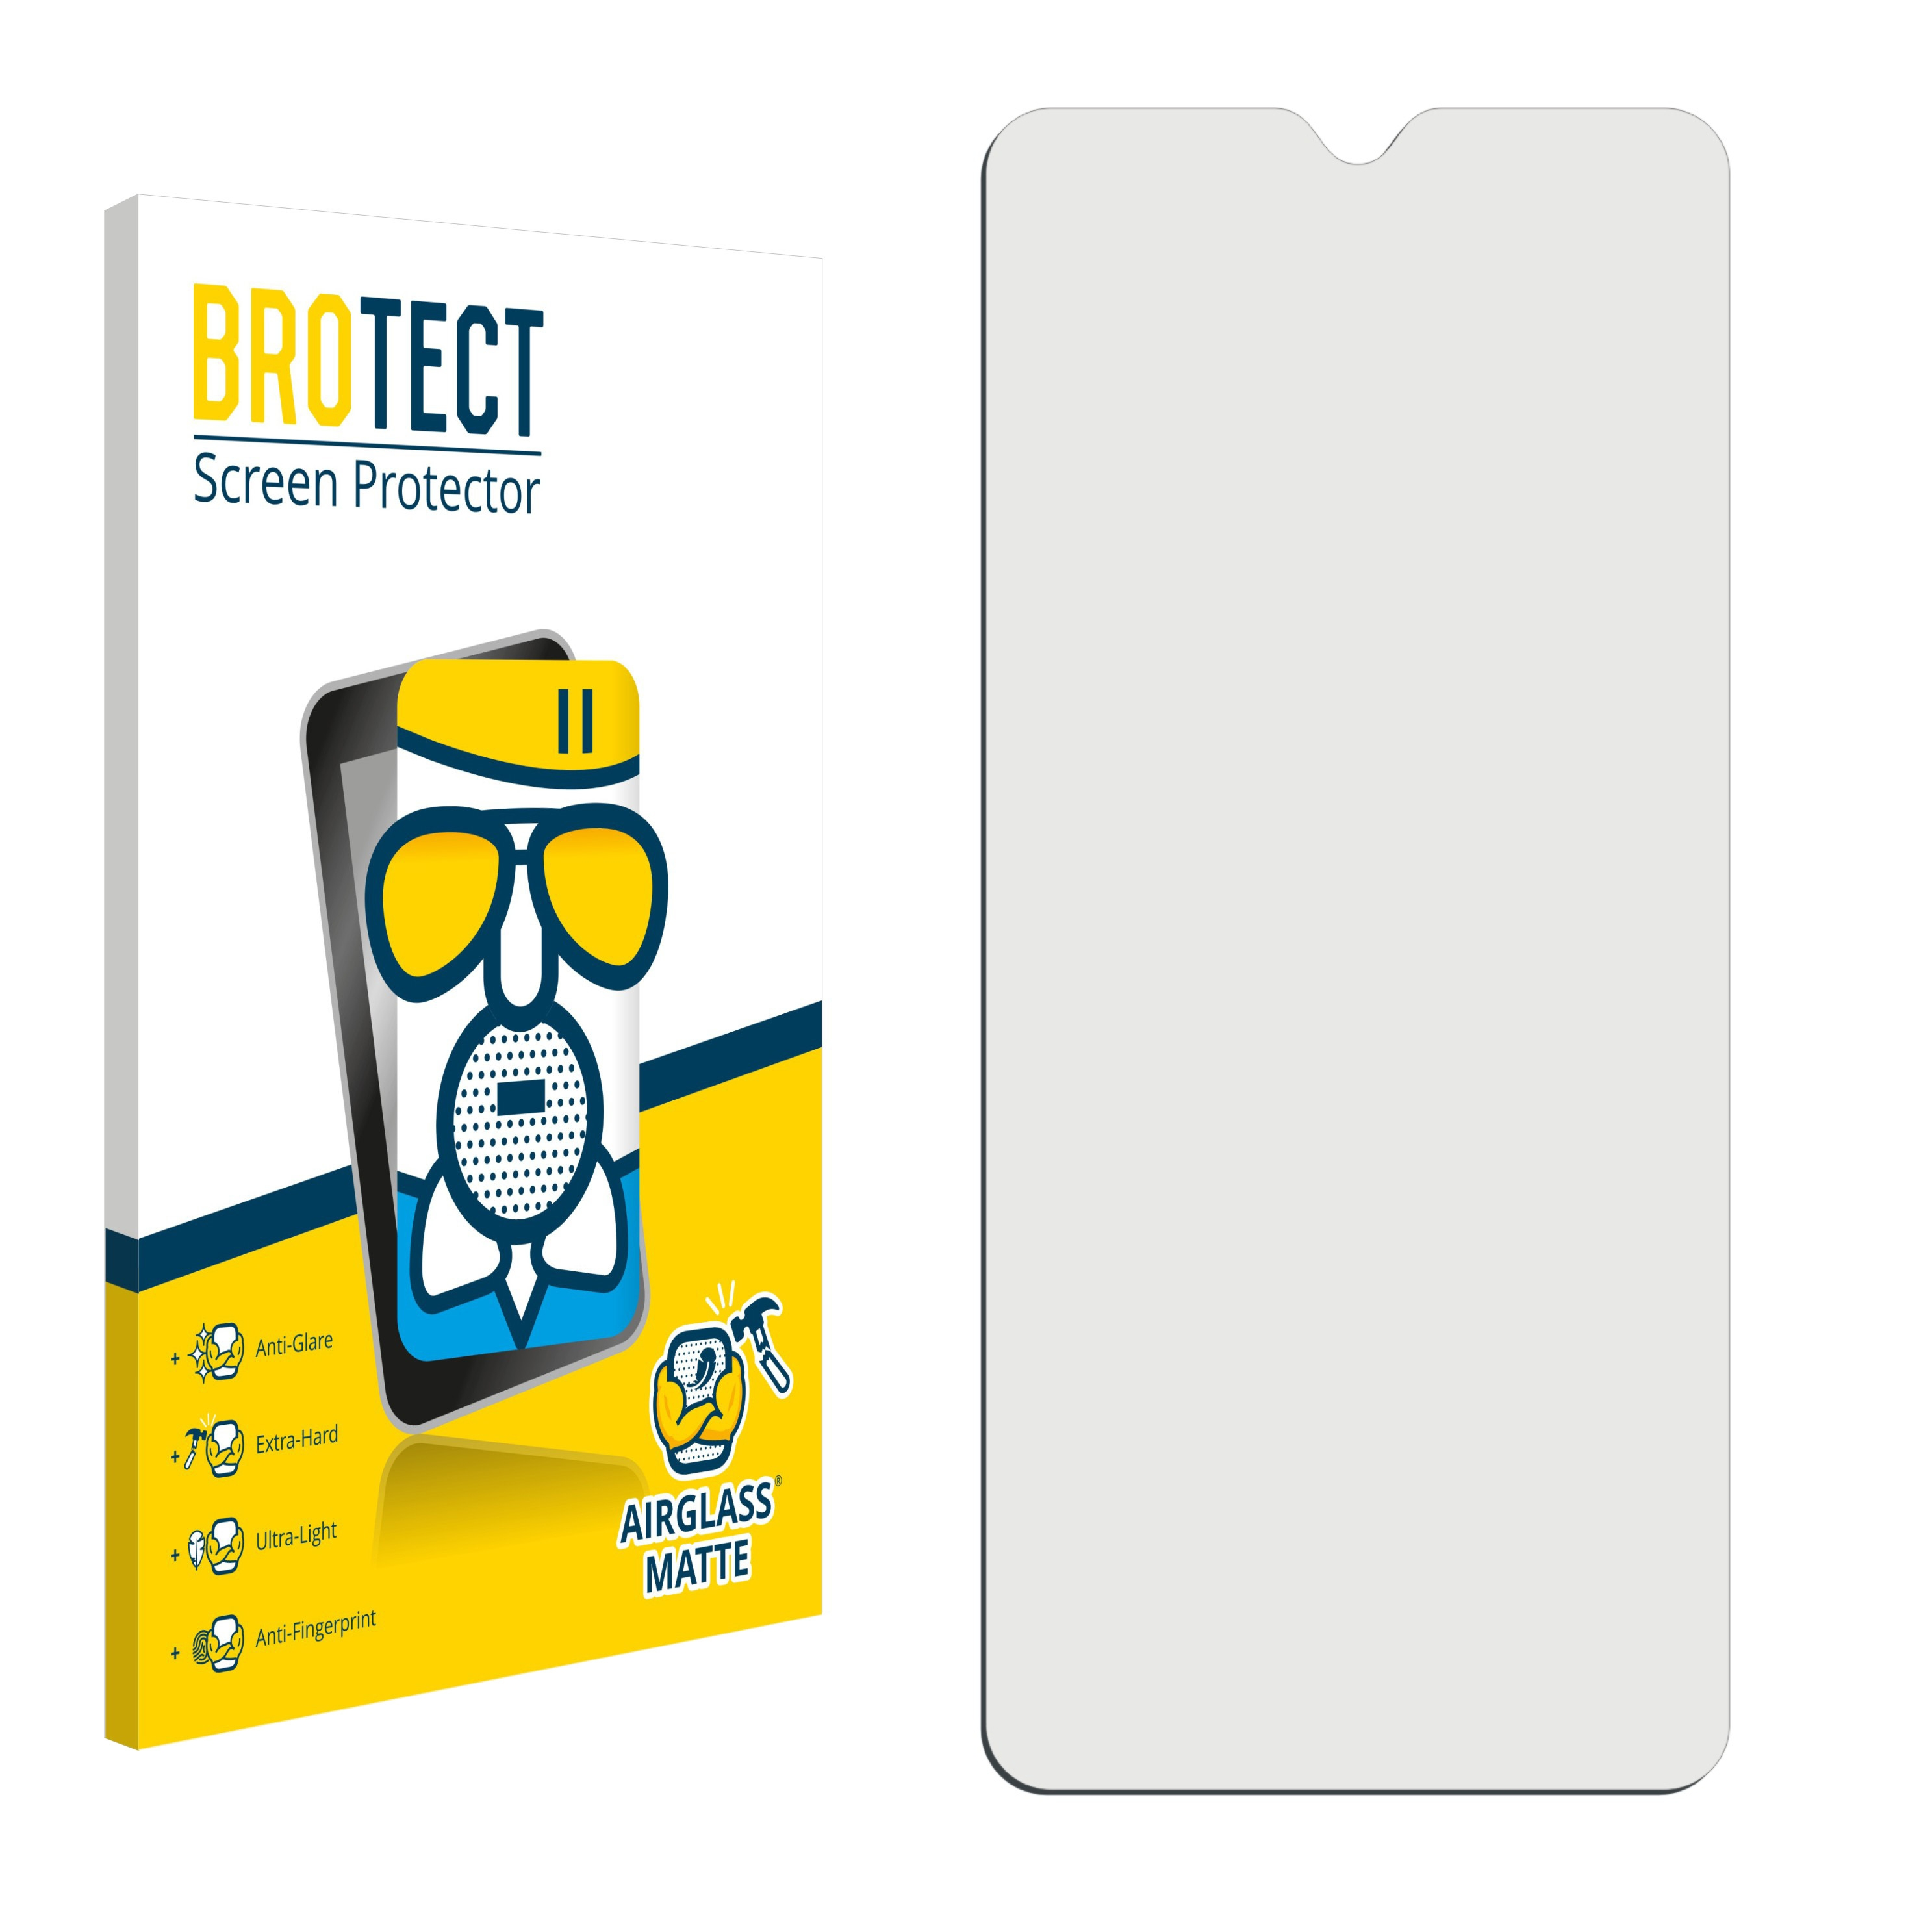 2020) 3X Alcatel matte Schutzfolie(für Airglass BROTECT